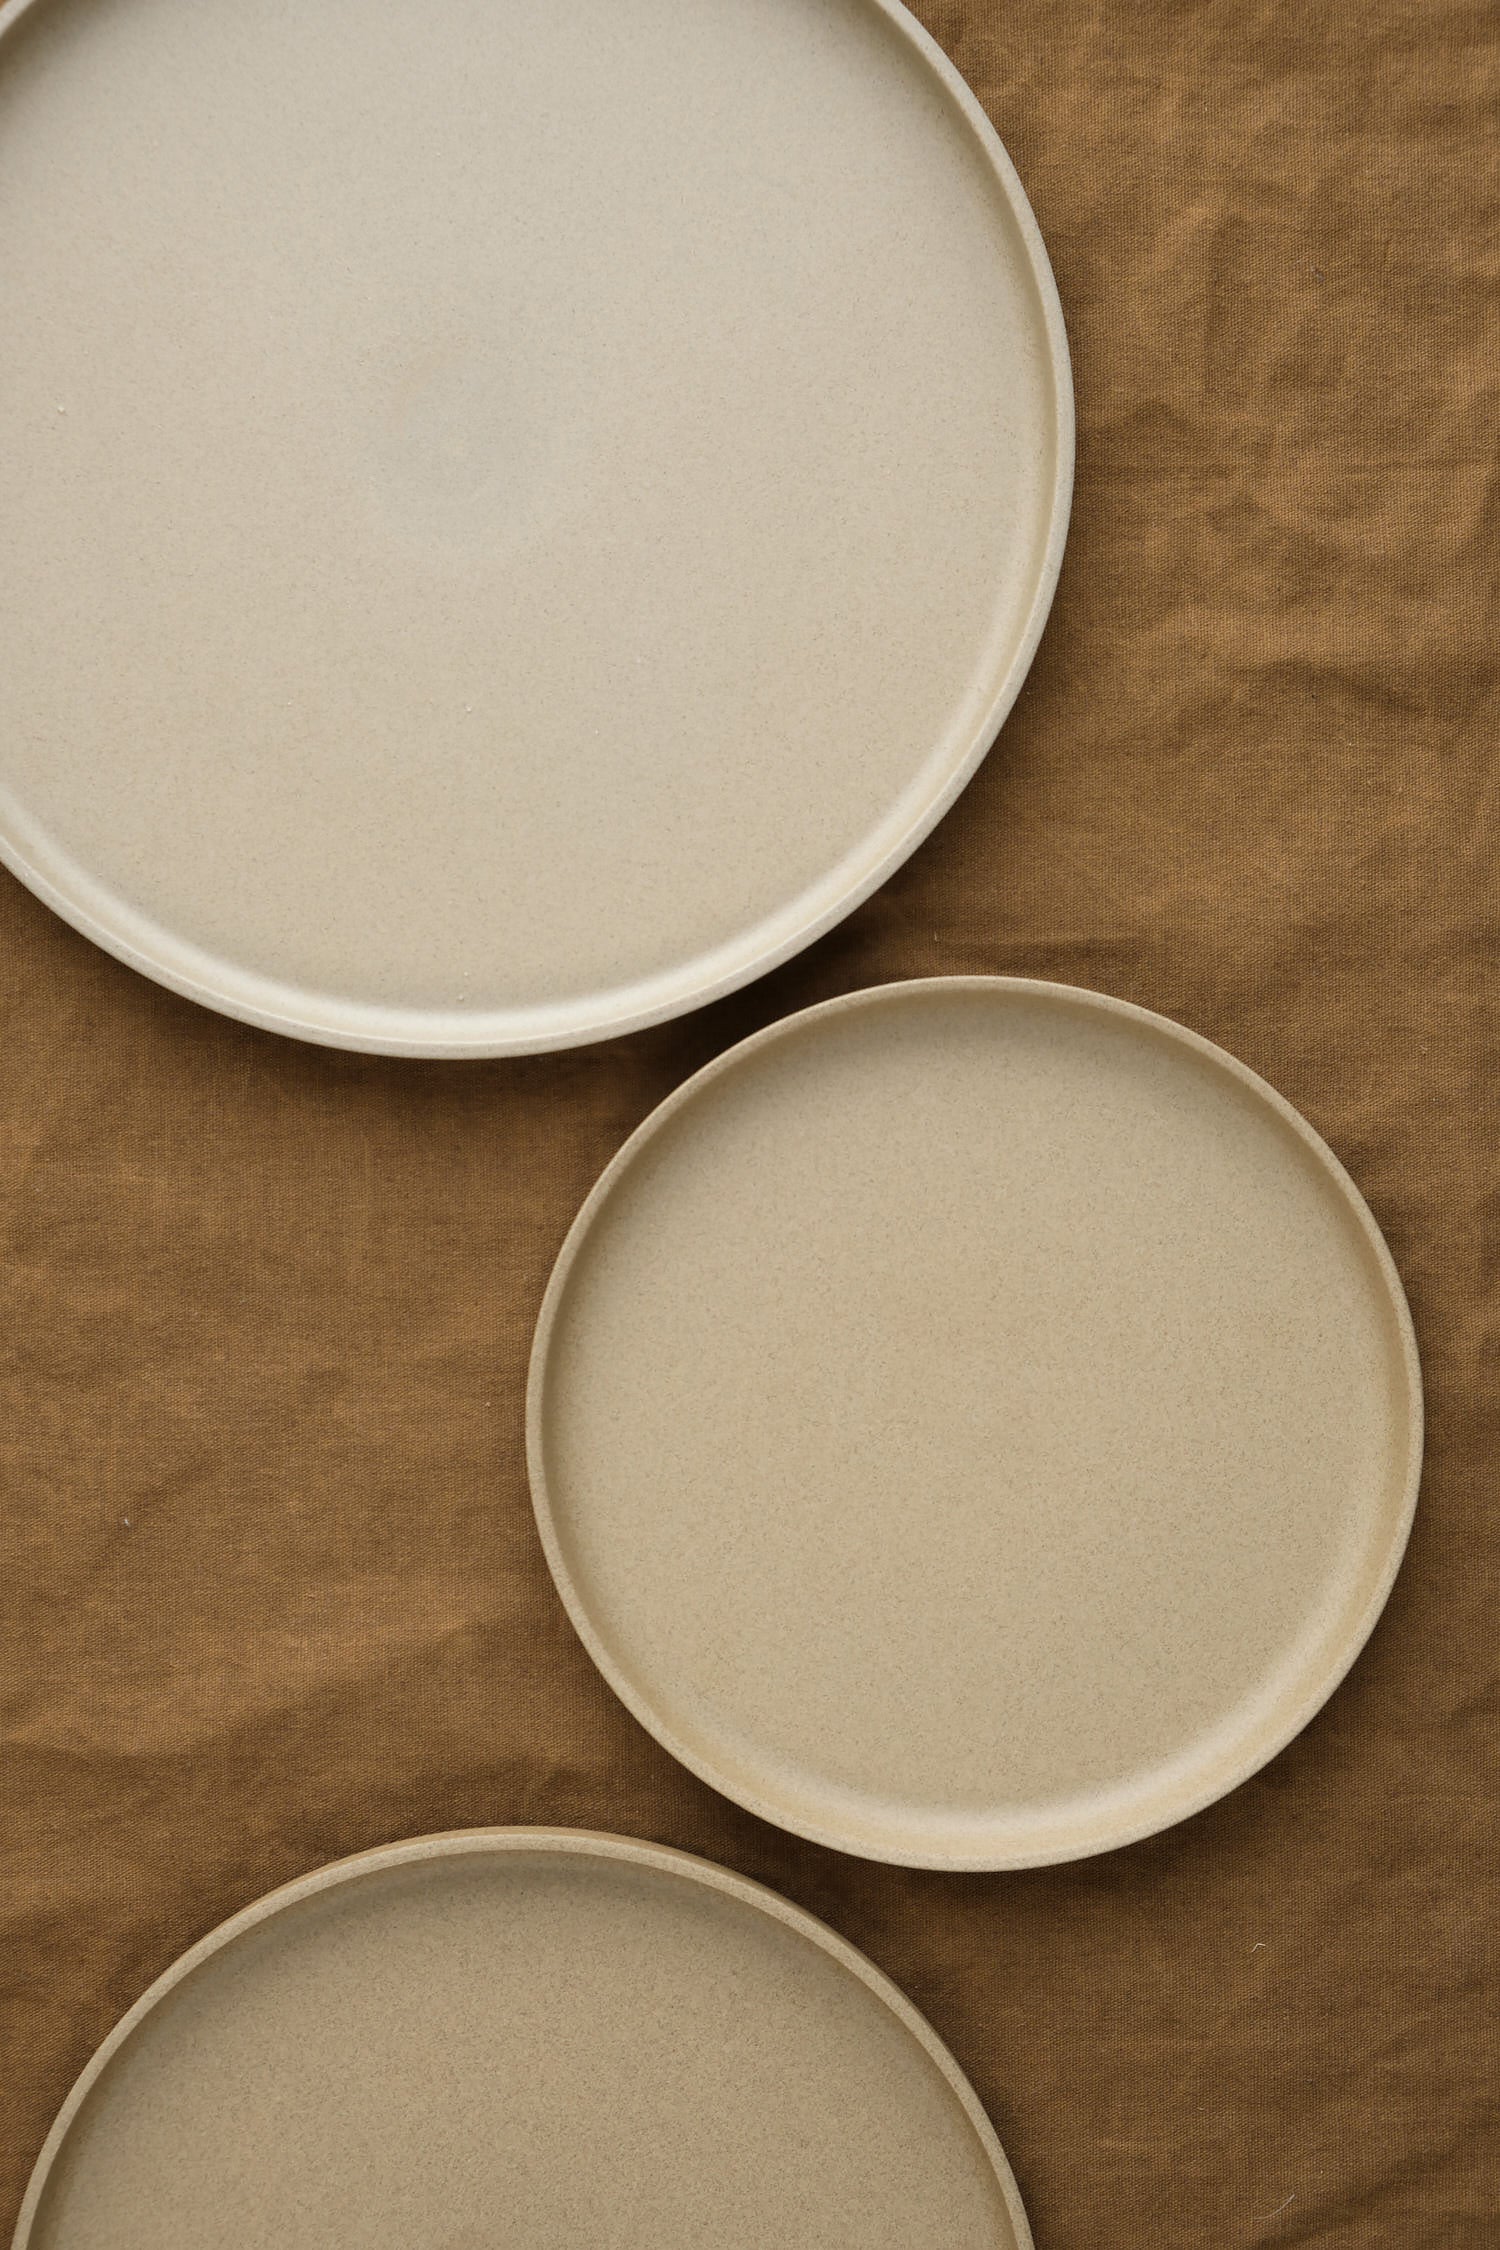 various natural plates